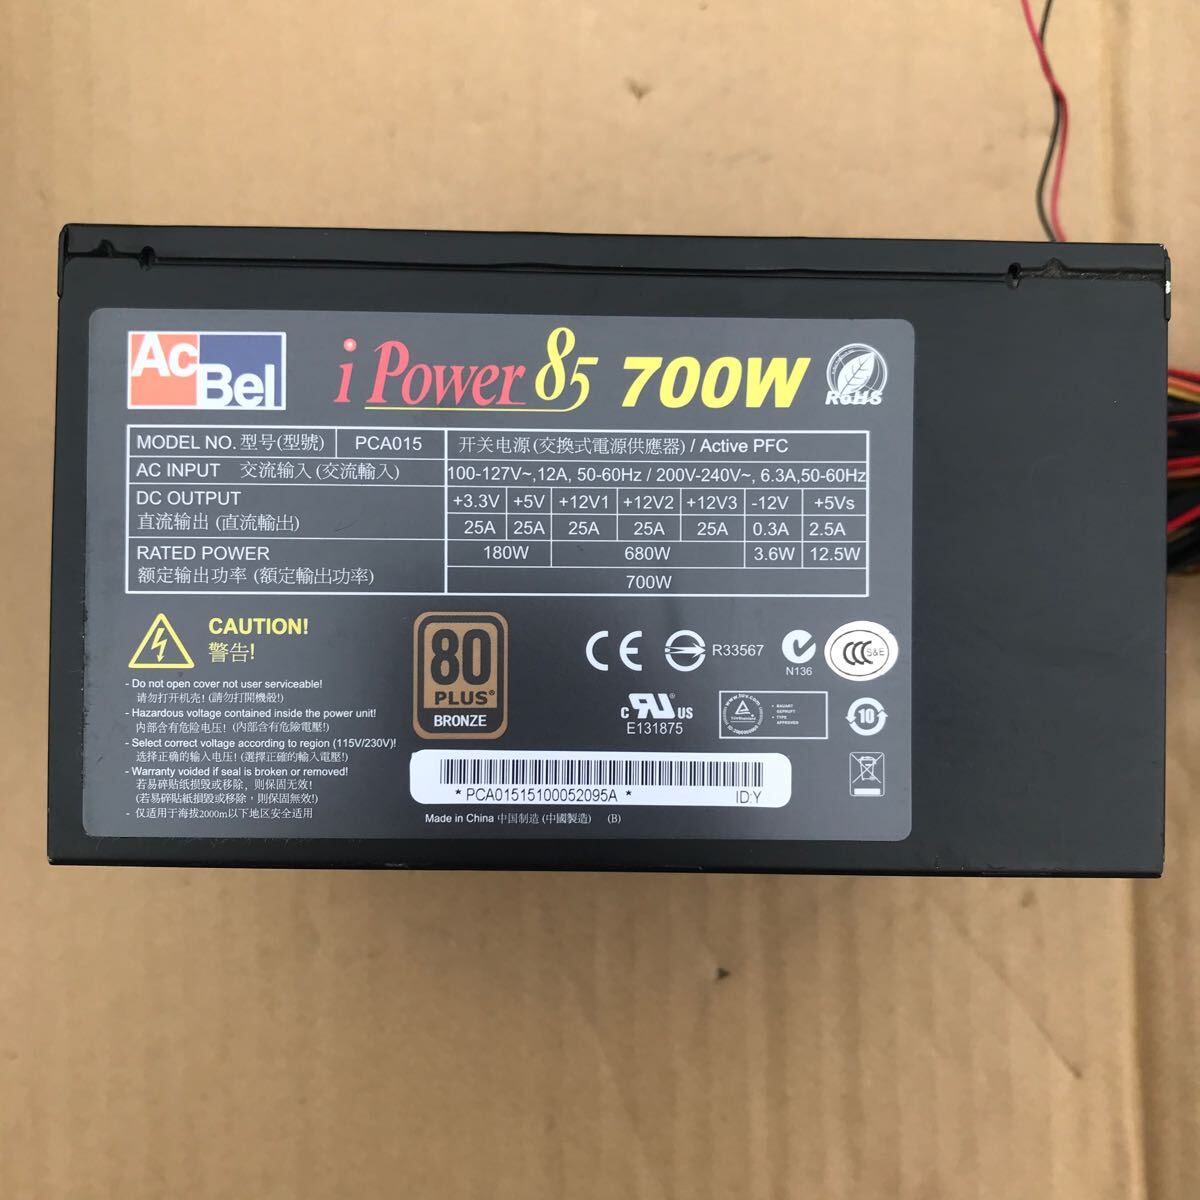 【中古】電源BOX ACBEL i power 85 700w D35の画像1